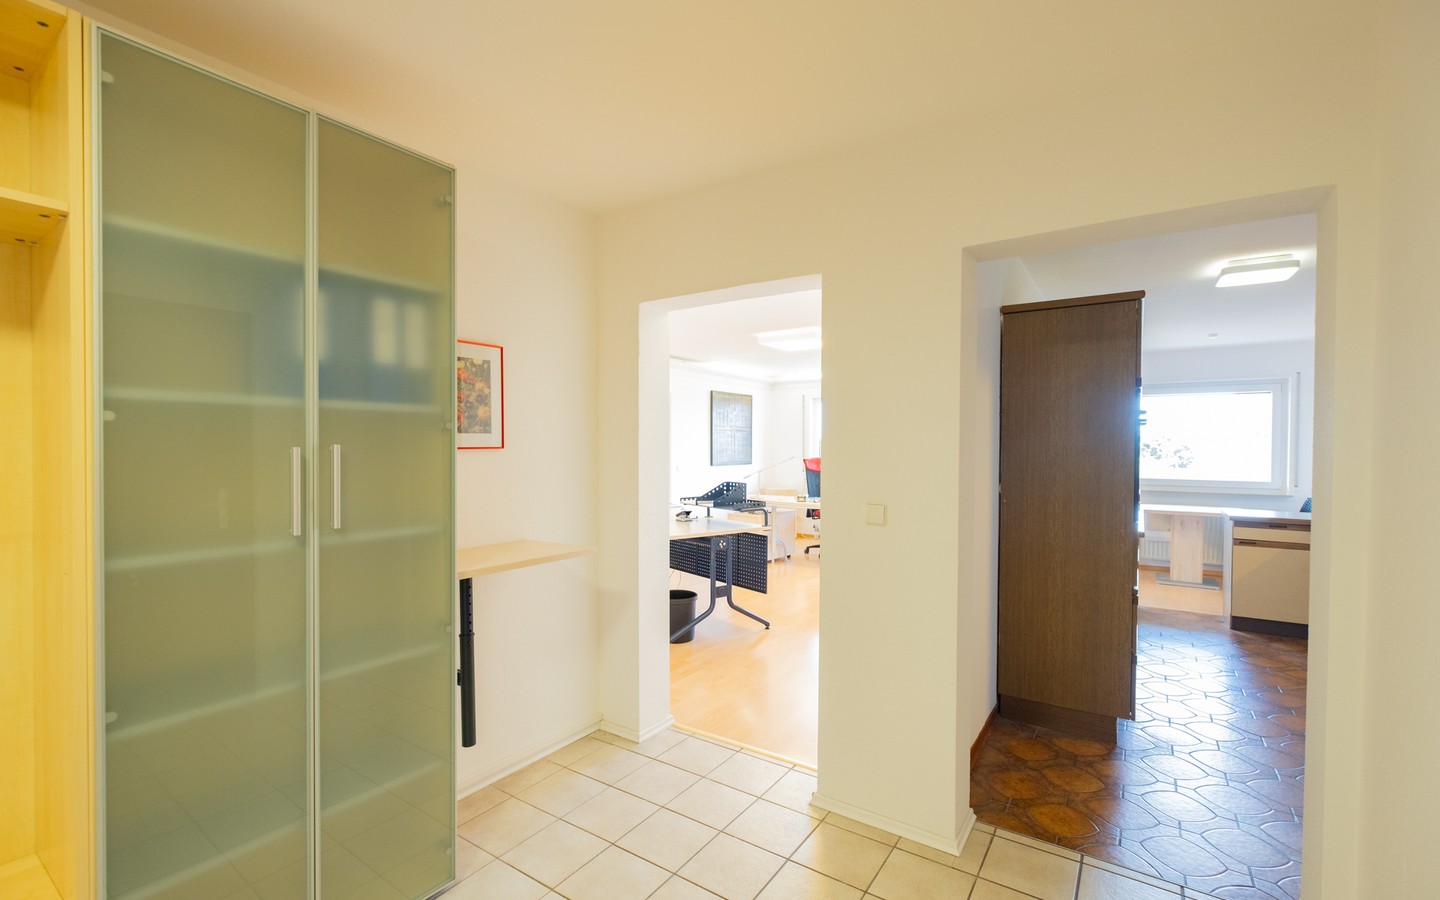 Diele - provisionsfrei in Ketsch: Top gepflegte 3,5-Zimmer-Wohnung mit großer Loggia und 2 Stellplätzen